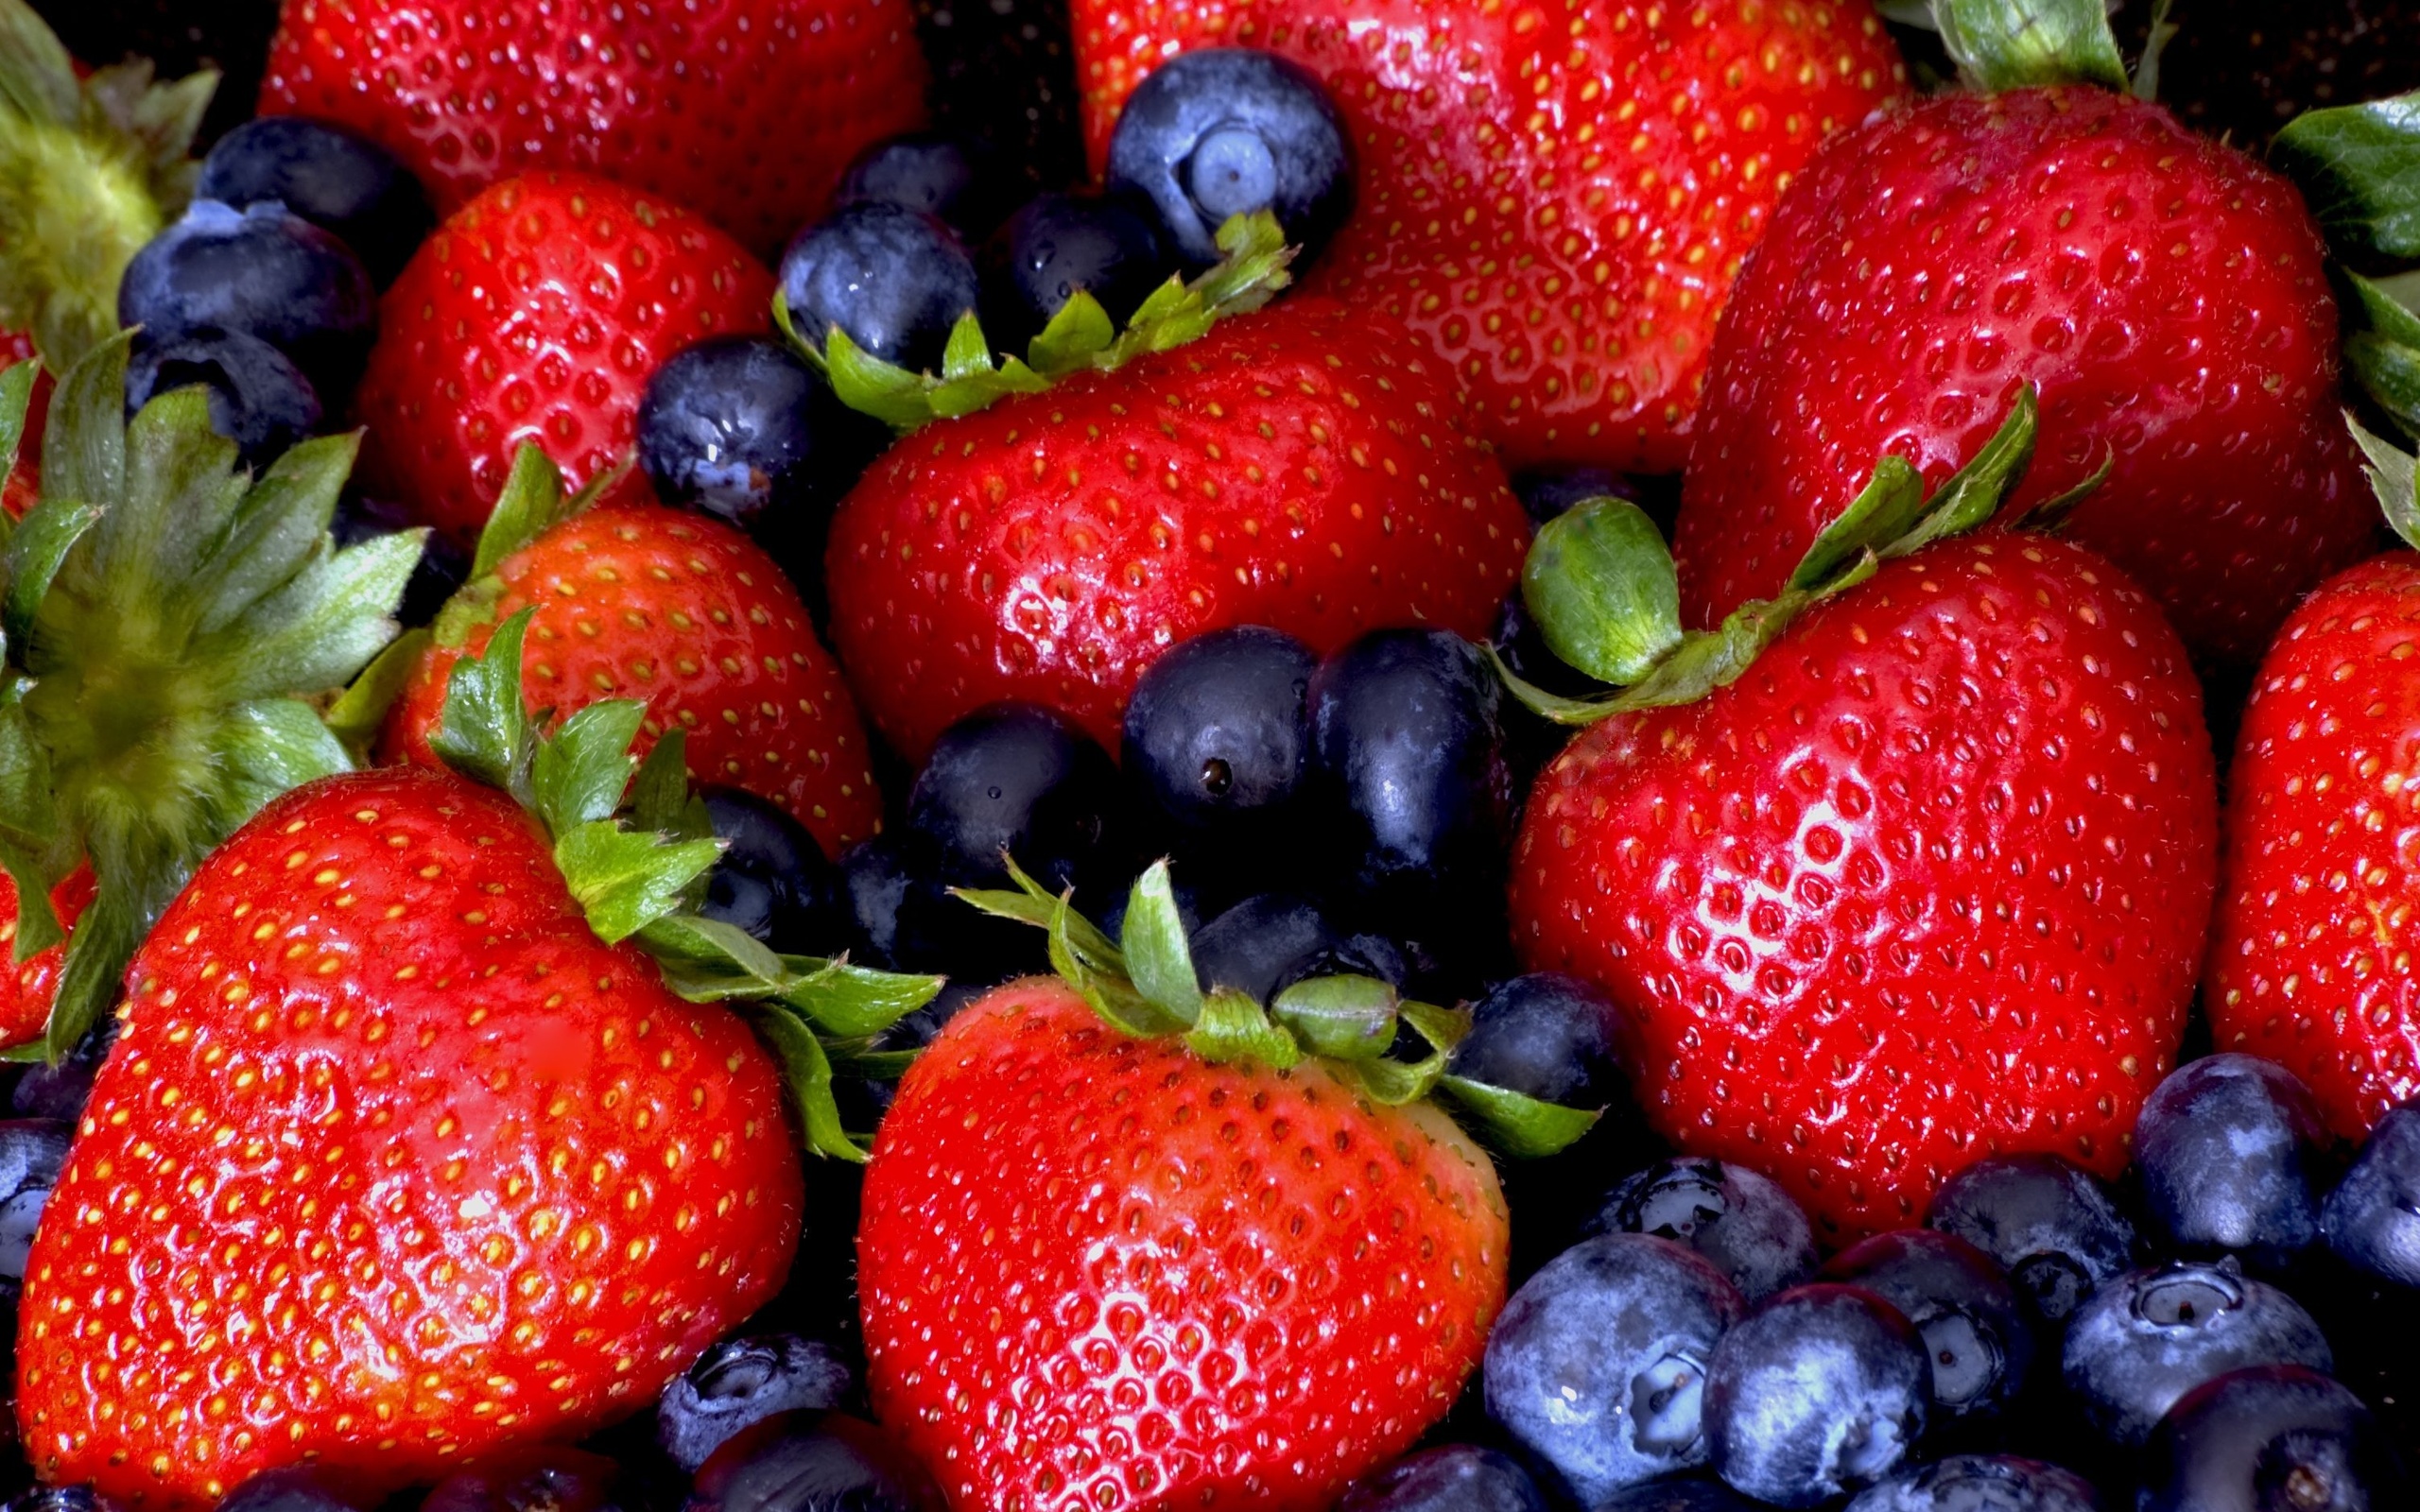 Сочные фрукты и ягоды